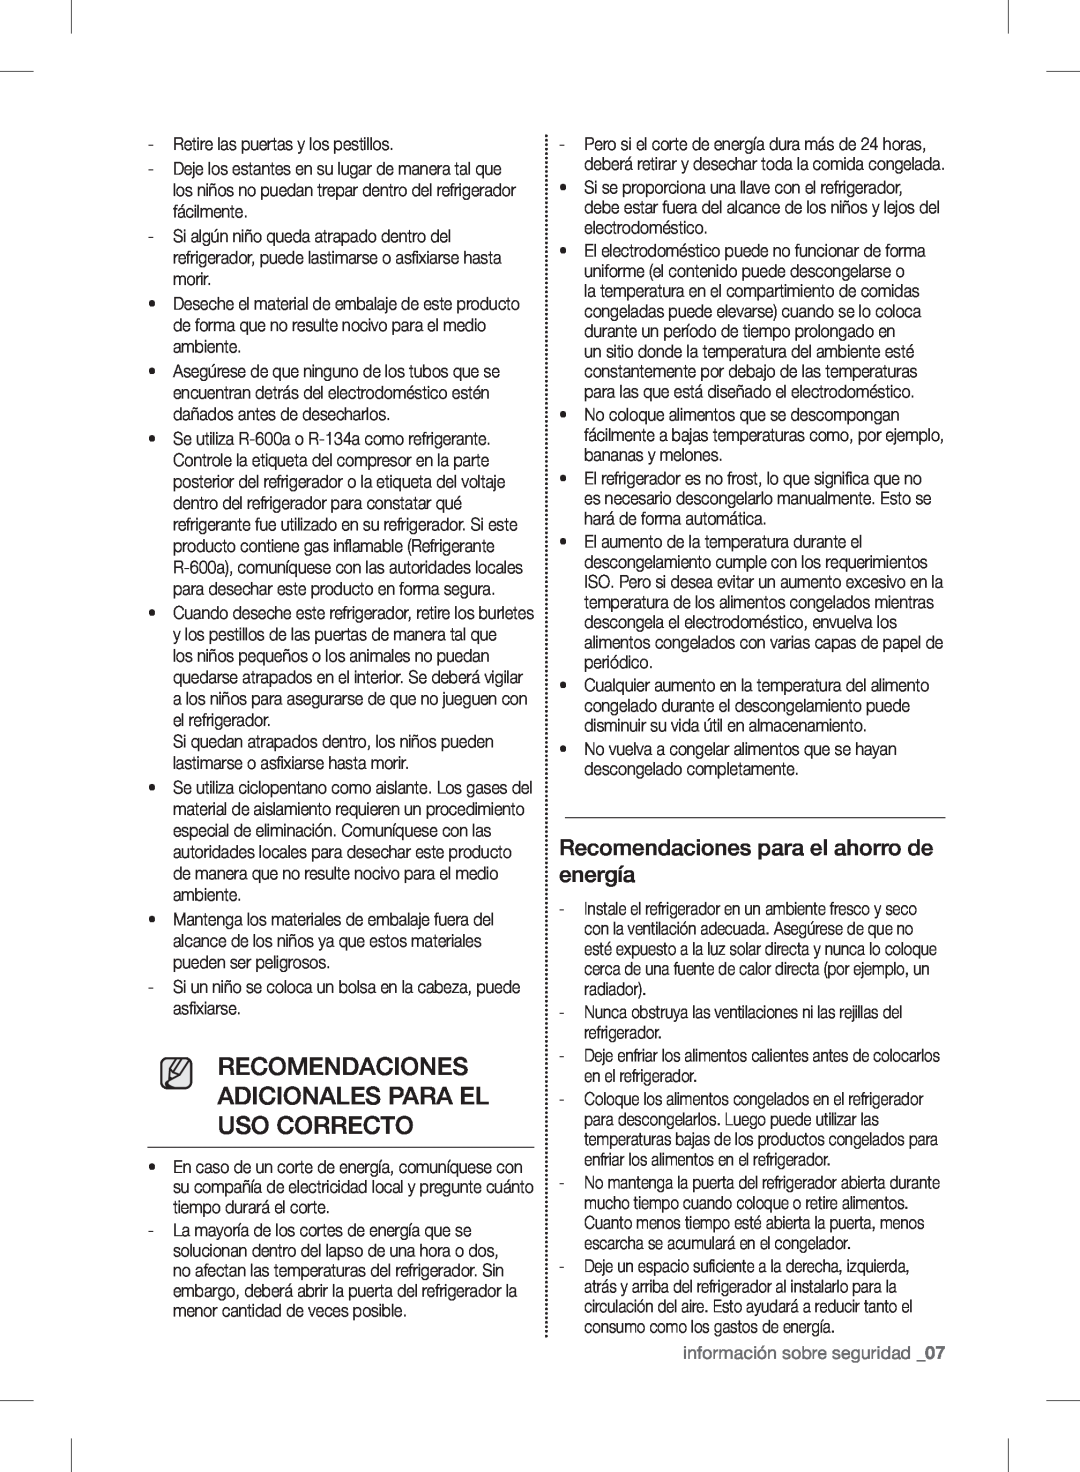 Samsung RF24FSEDBSR user manual Recomendaciones Adicionales Para El Uso Correcto, Recomendaciones para el ahorro de energía 